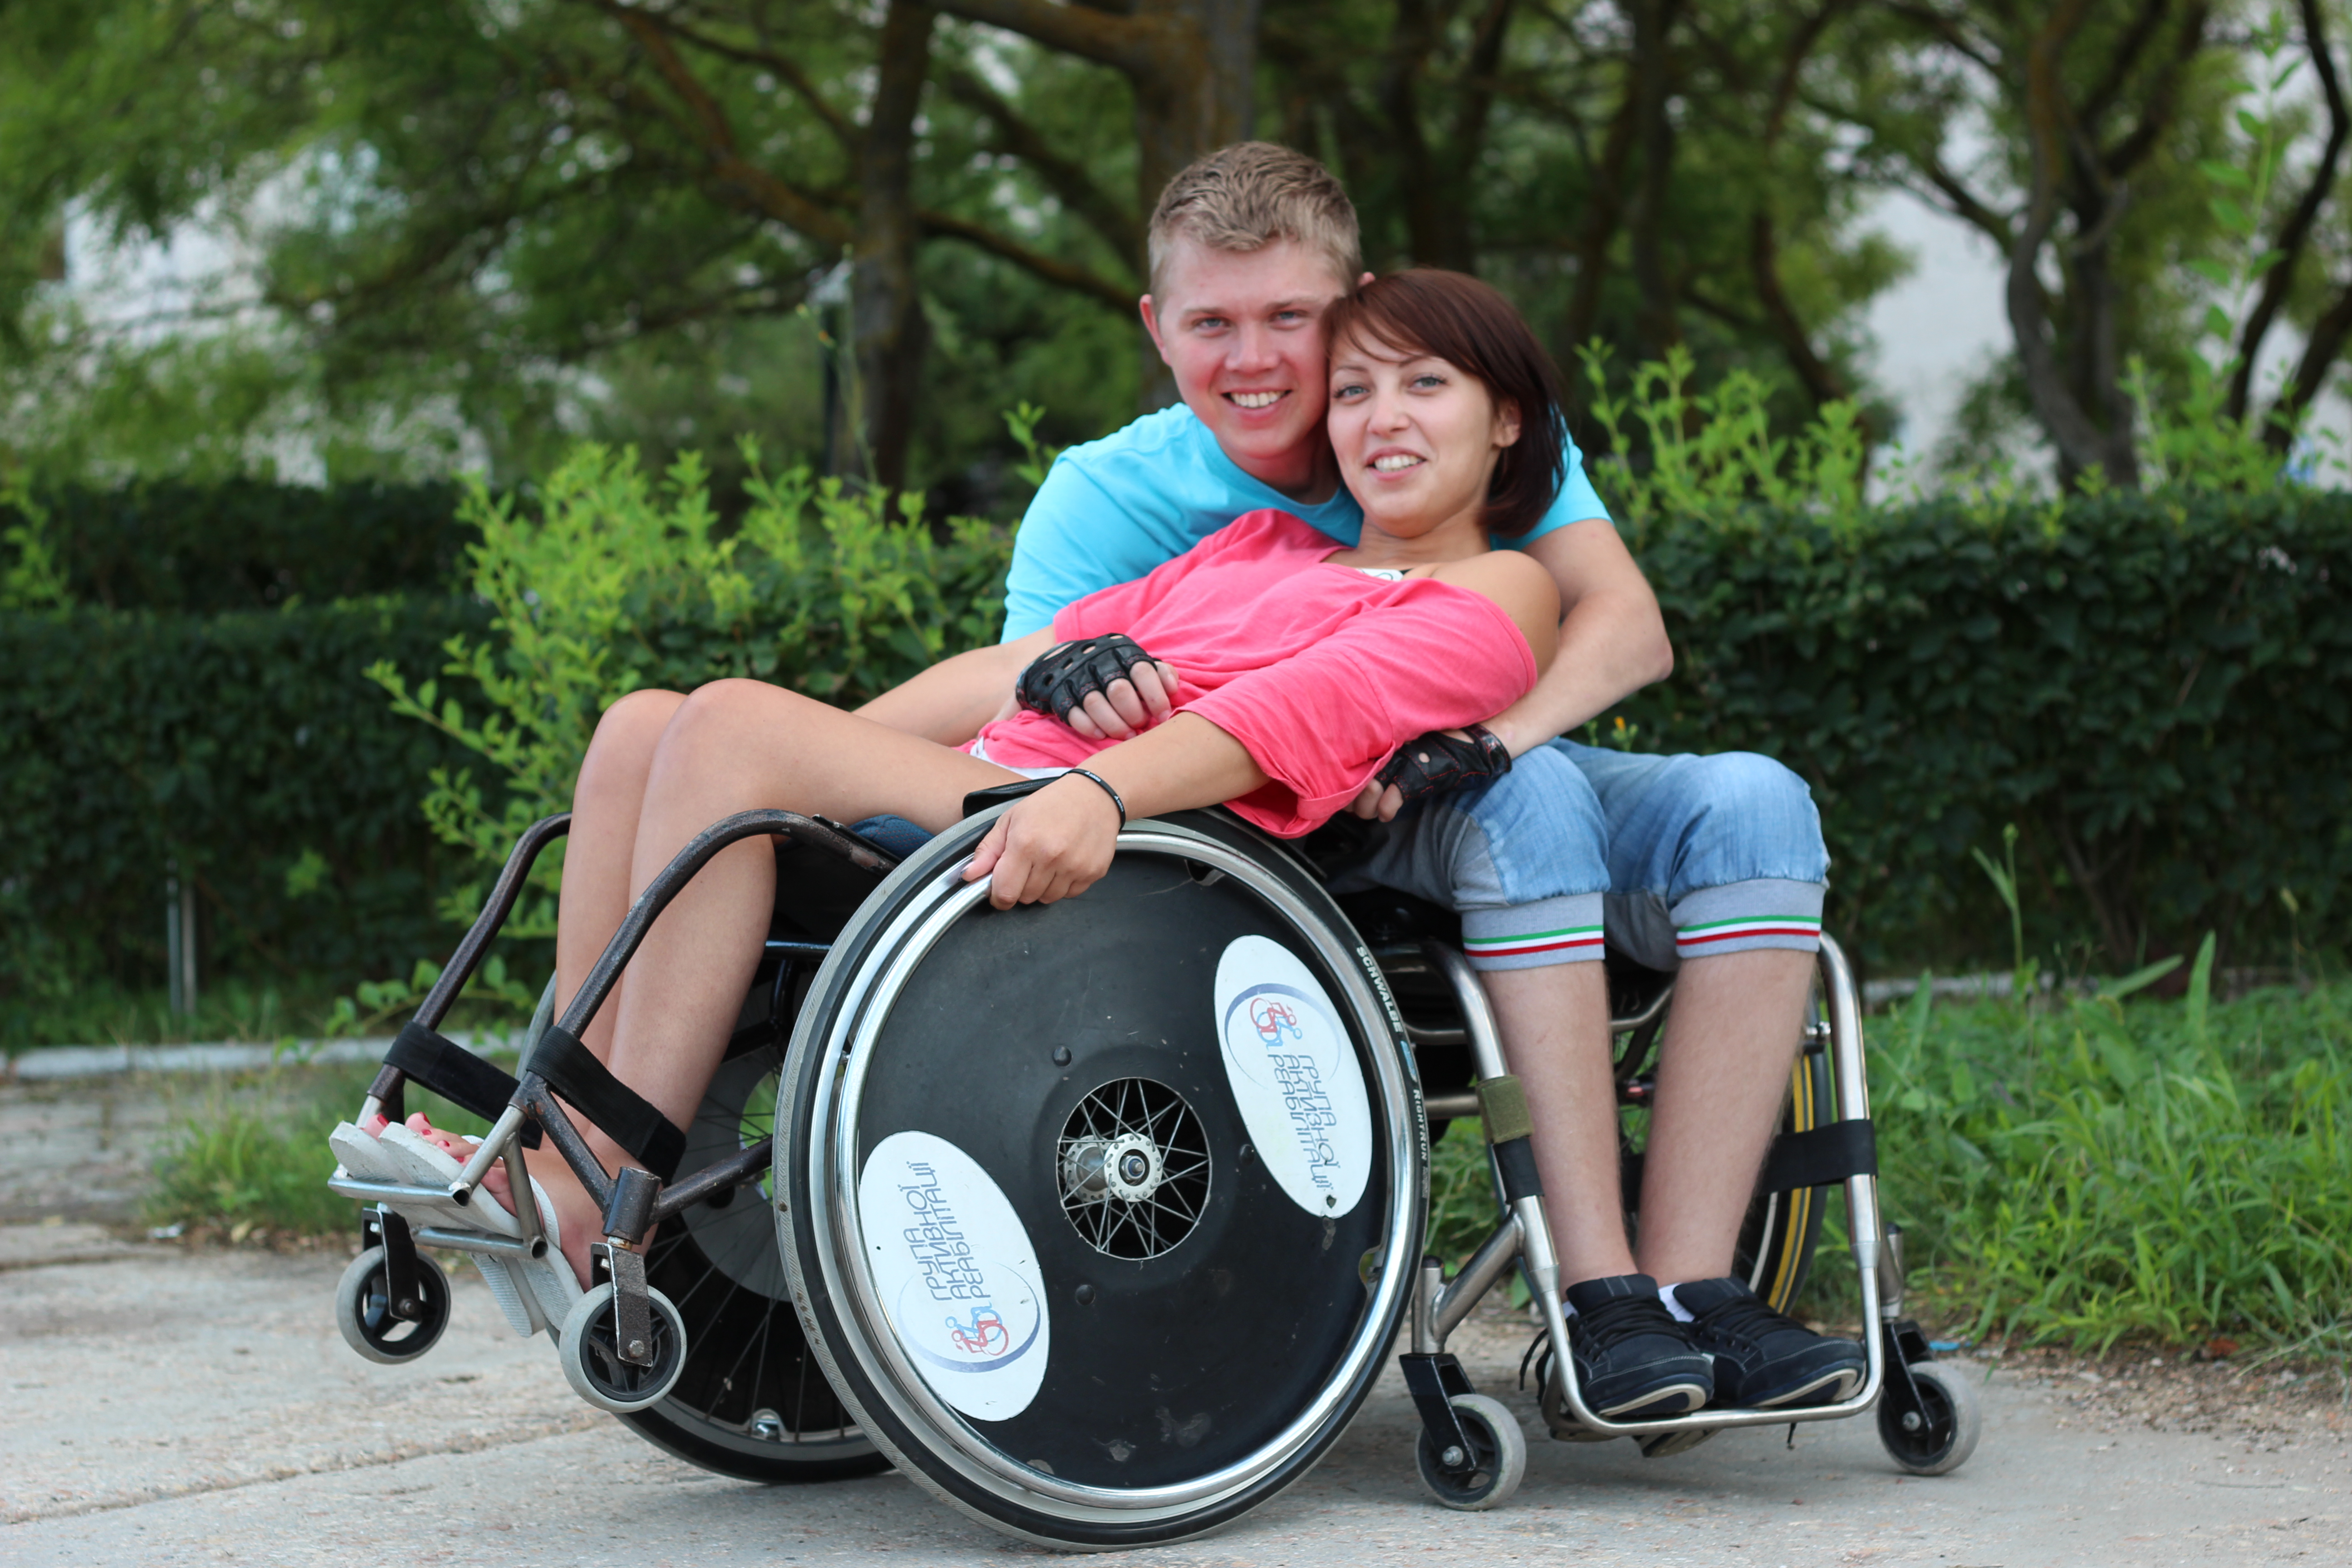 Люди с ограниченными возможностями примеры. Люди с ограниченными возможностями. Челик в инвальдной коляске. Люди сограничеными возможностями. Инвалиды люди с ограниченными возможностями.